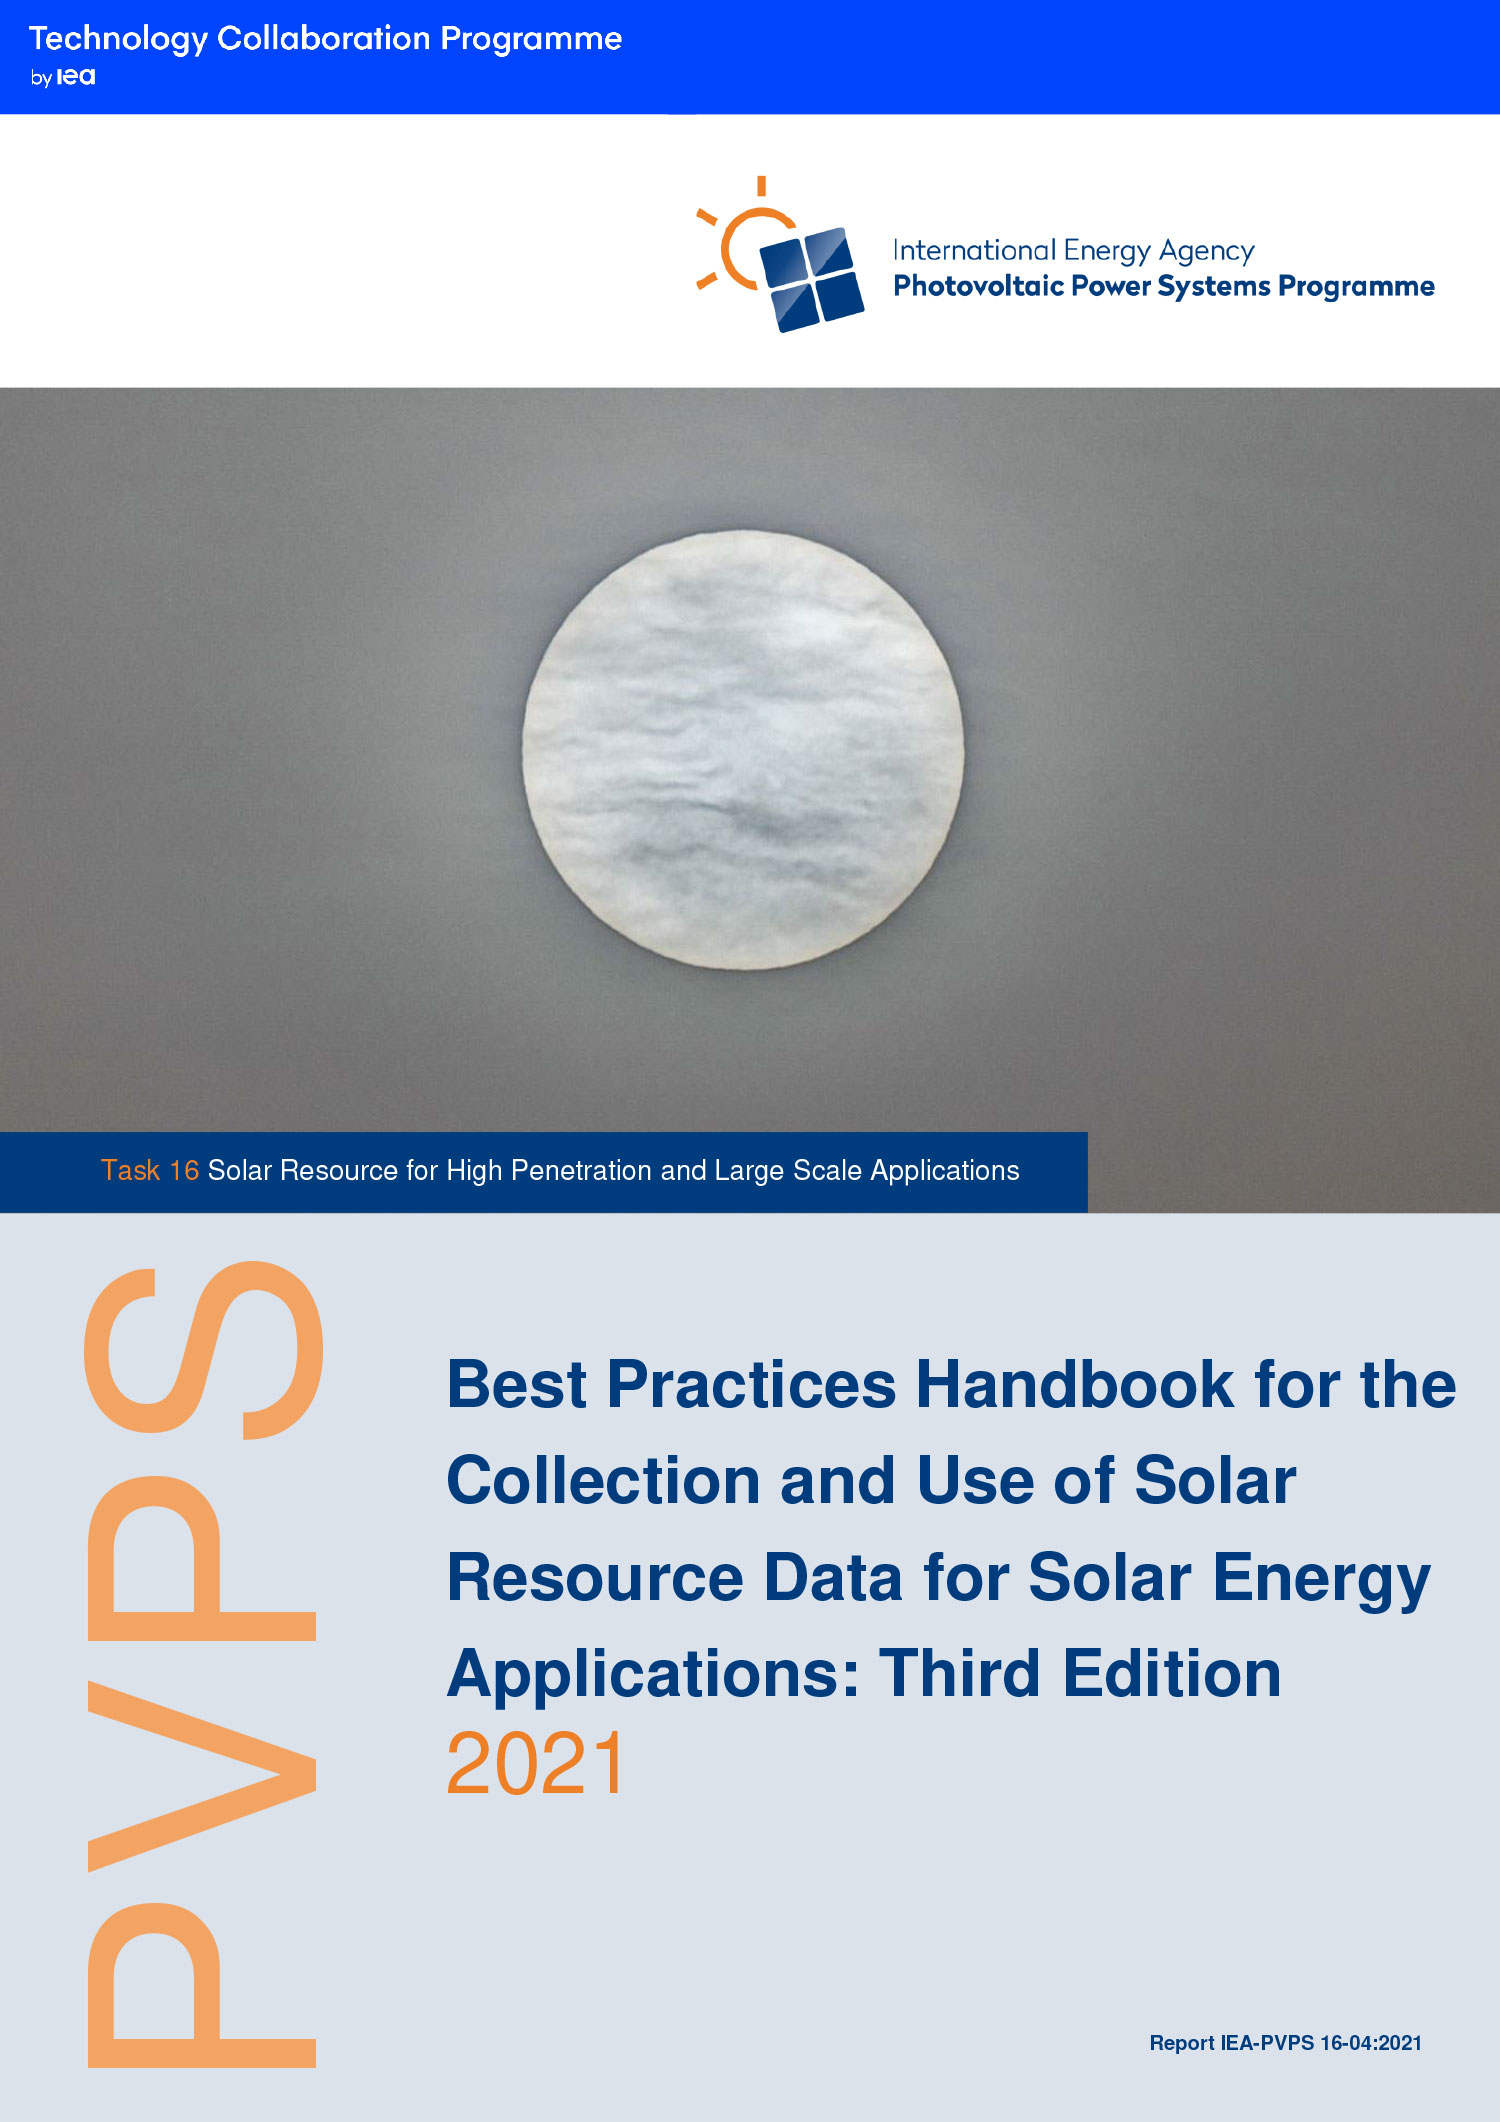 Leitlinien und Empfehlungen („Best practices“) werden im IEA PVPS Best practices Handbook veröffentlicht